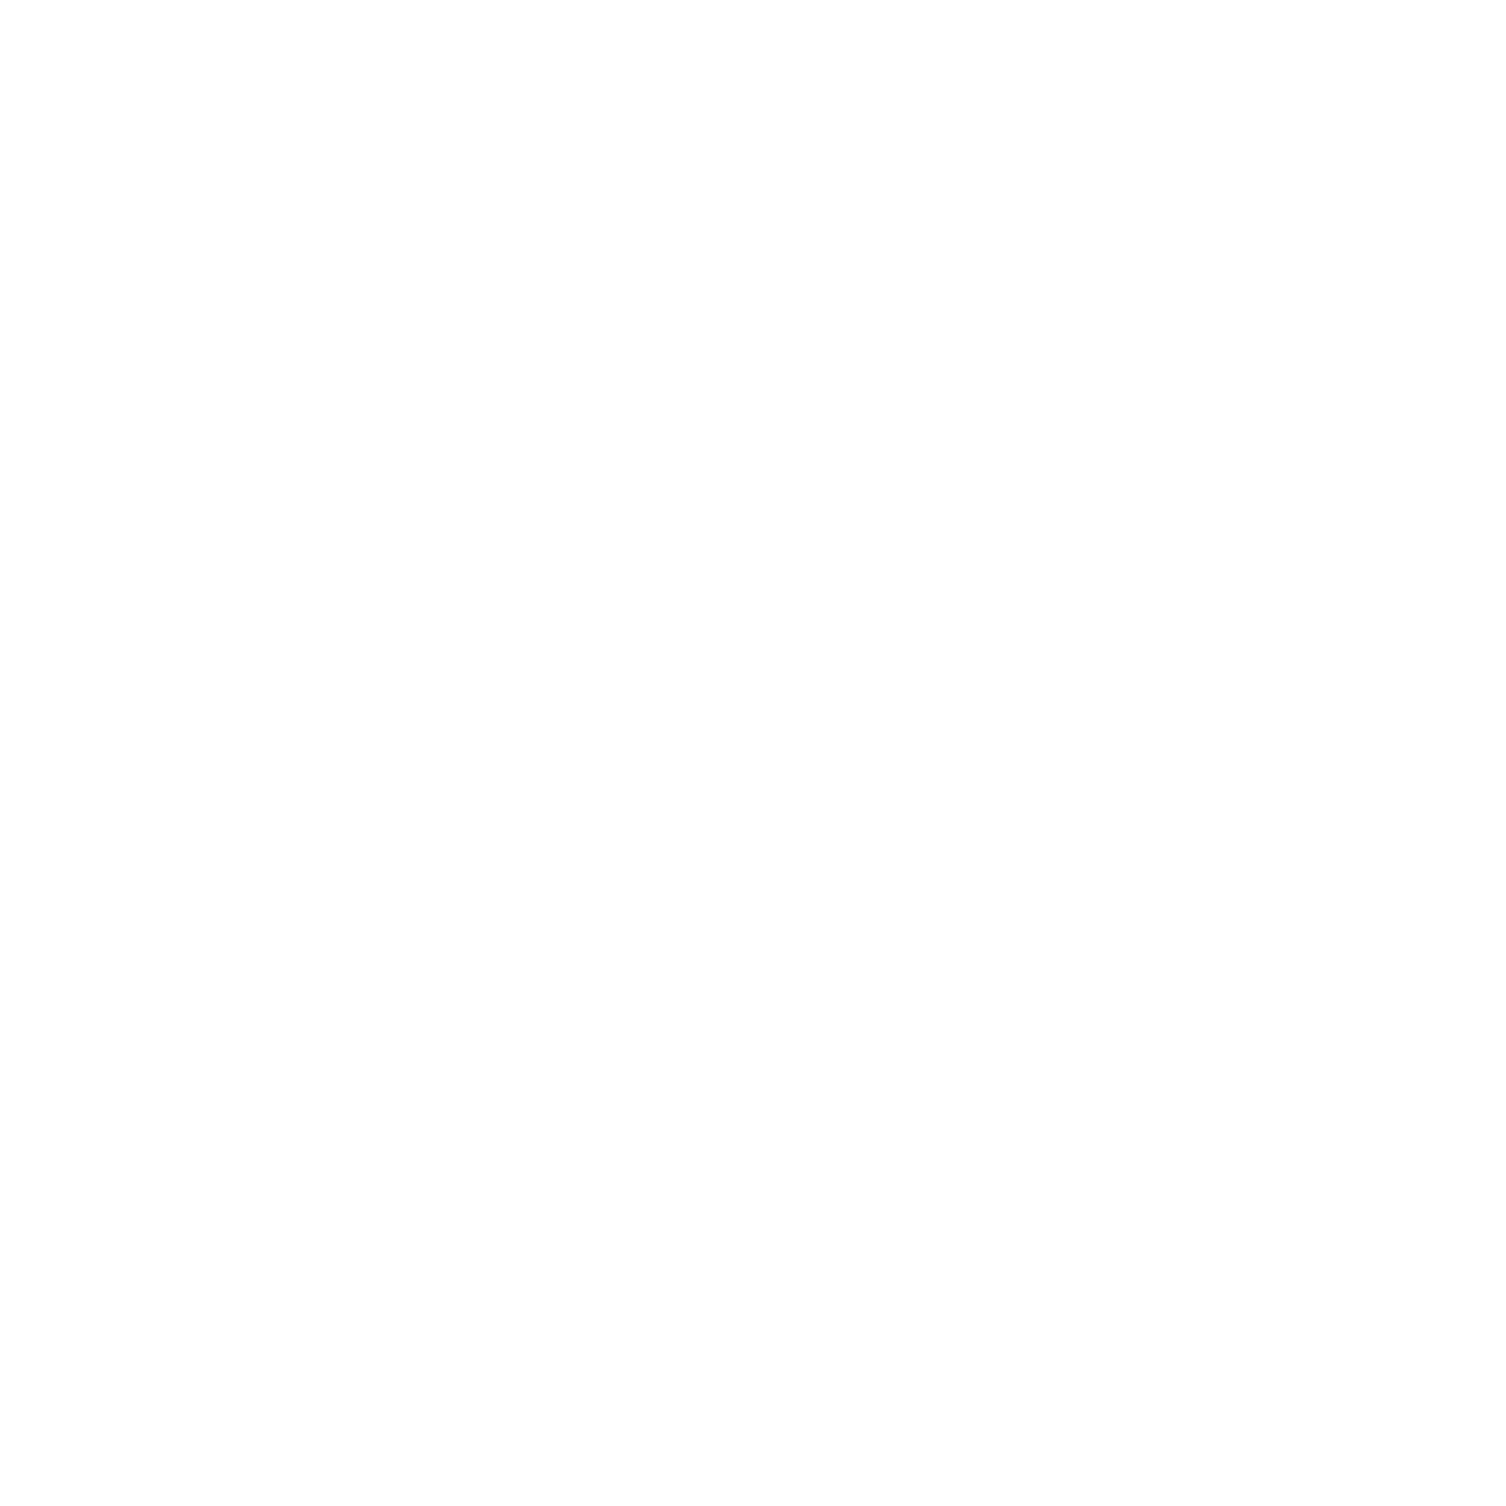 Teleflex logo for dark backgrounds (transparent PNG)